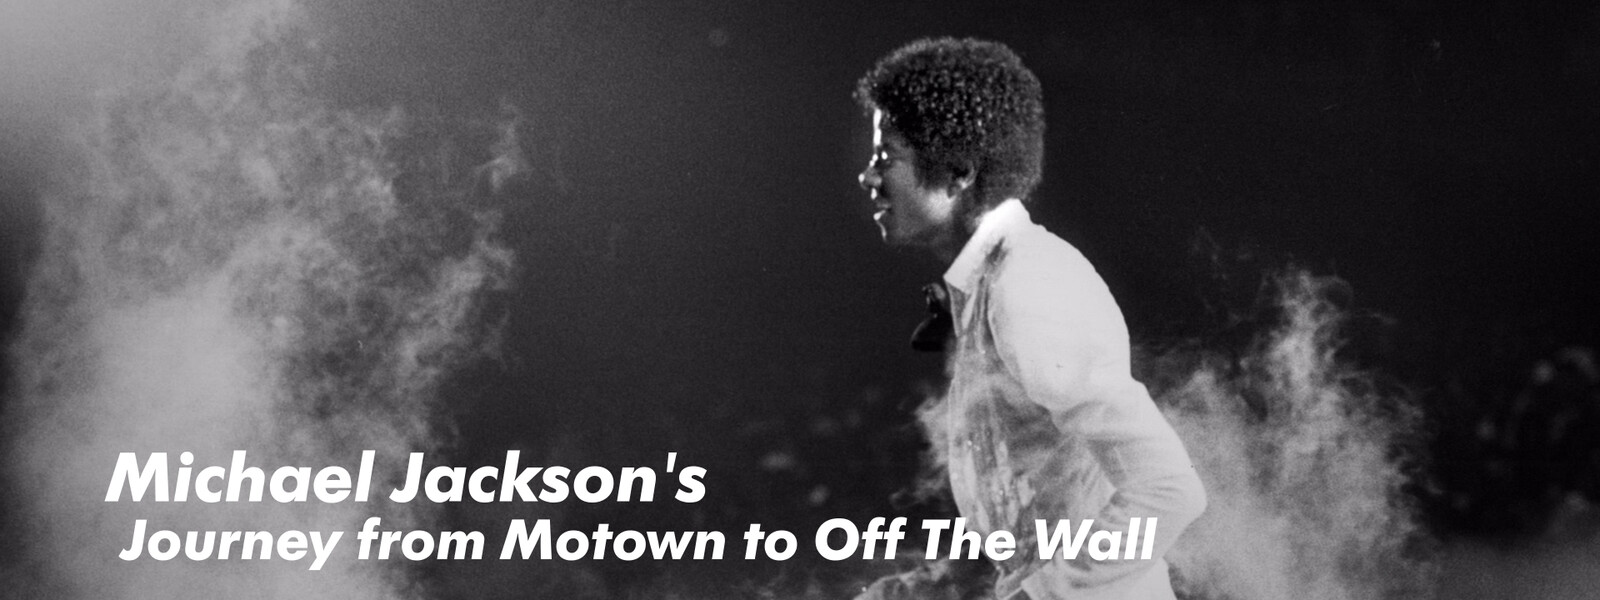 マイケル･ジャクソン：映画「Michael Jackson's Journey from Motown to Off The Wall」の動画 - マイケル・ジャクソン ザ・ムービー 真実の物語